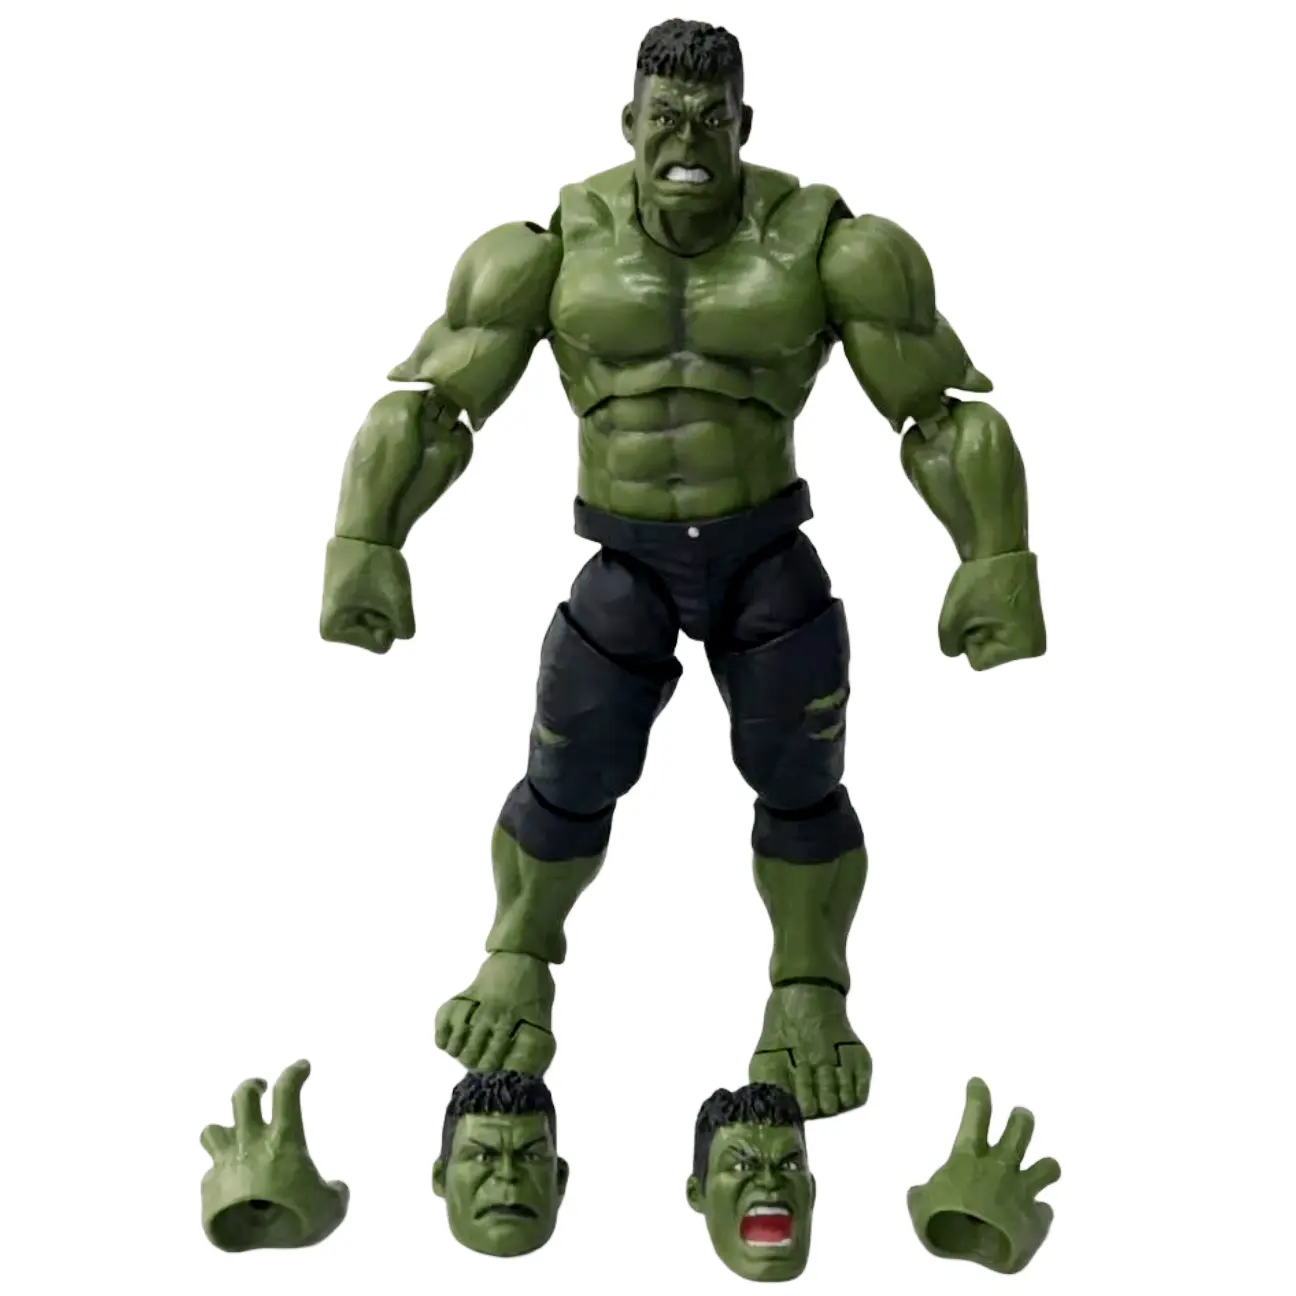 Venta al por mayor juguetes para niños modelo articulaciones movibles PVC muñeca coleccionables Marvels Legends Hulks figuras de acción estatuas